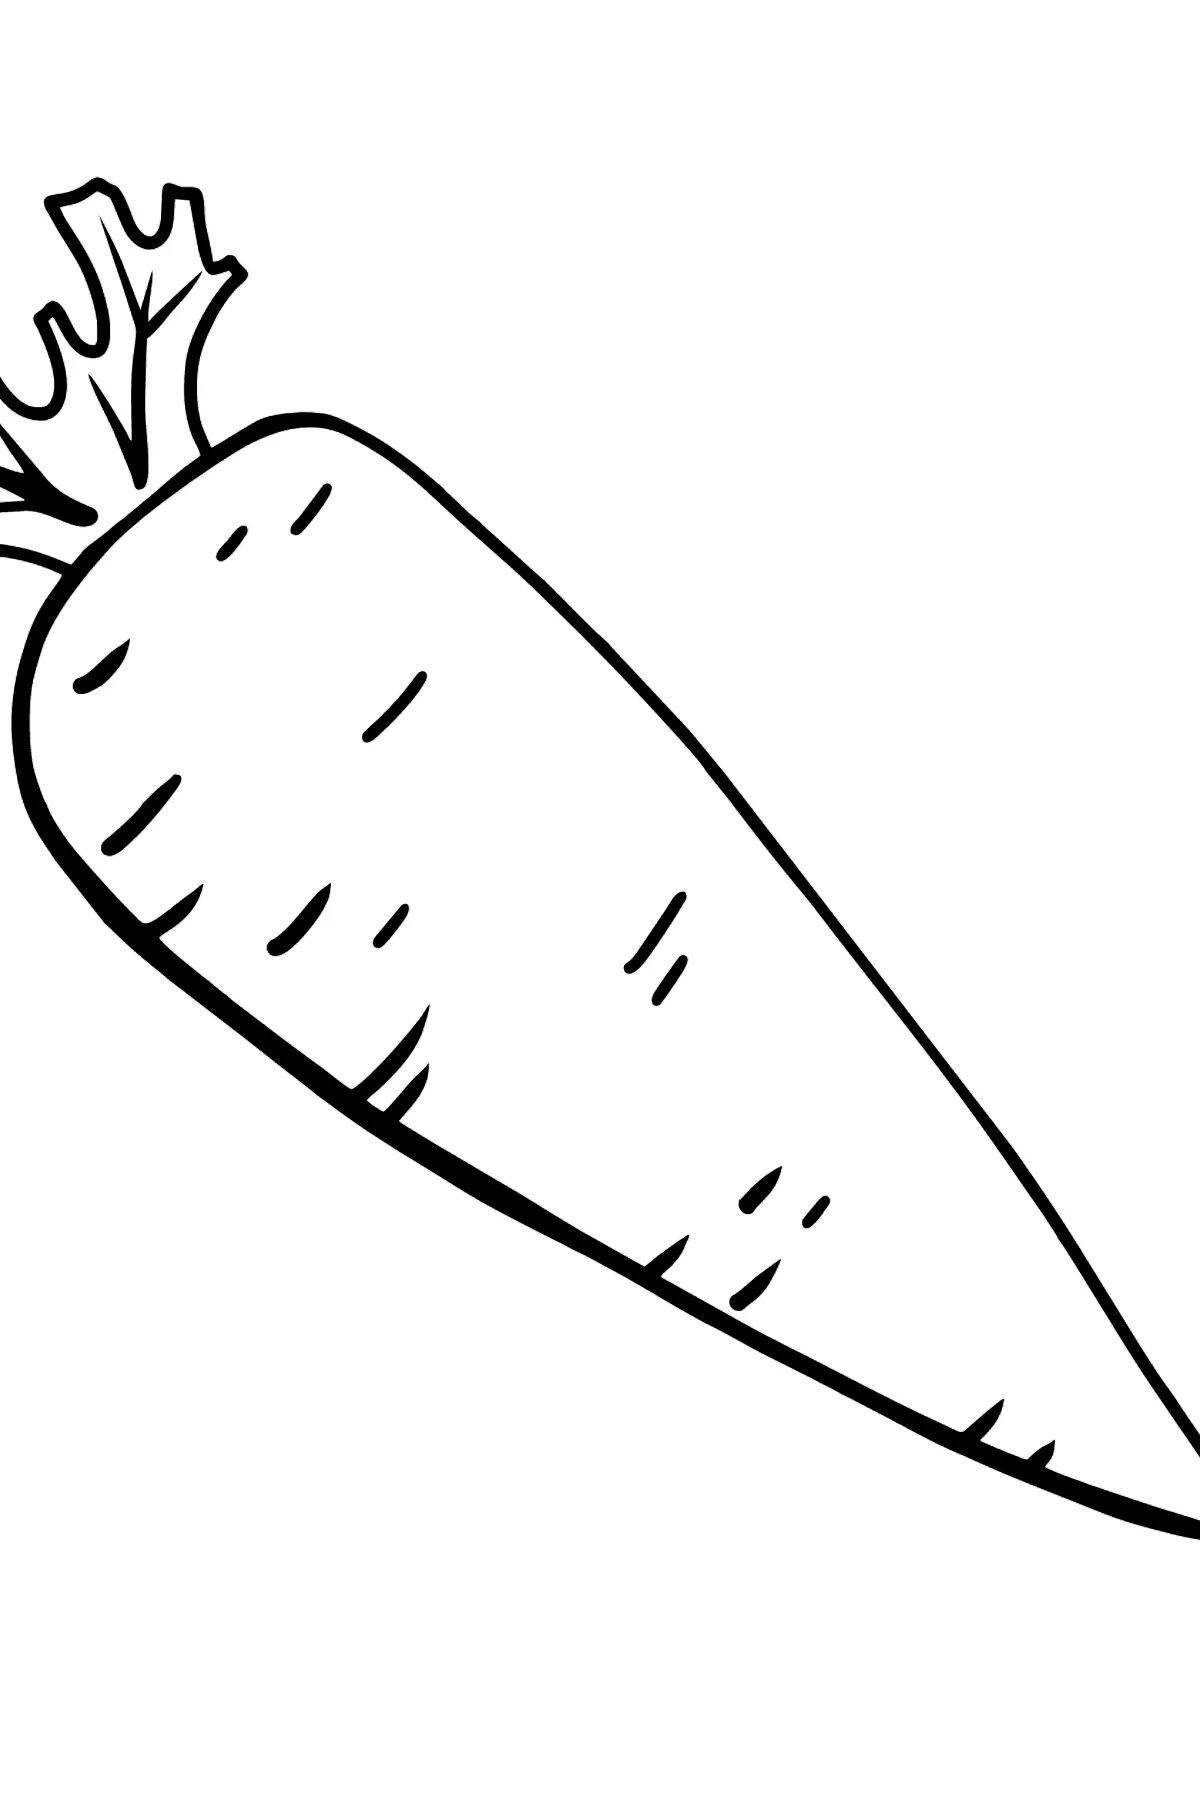 Игривый рисунок моркови для детей